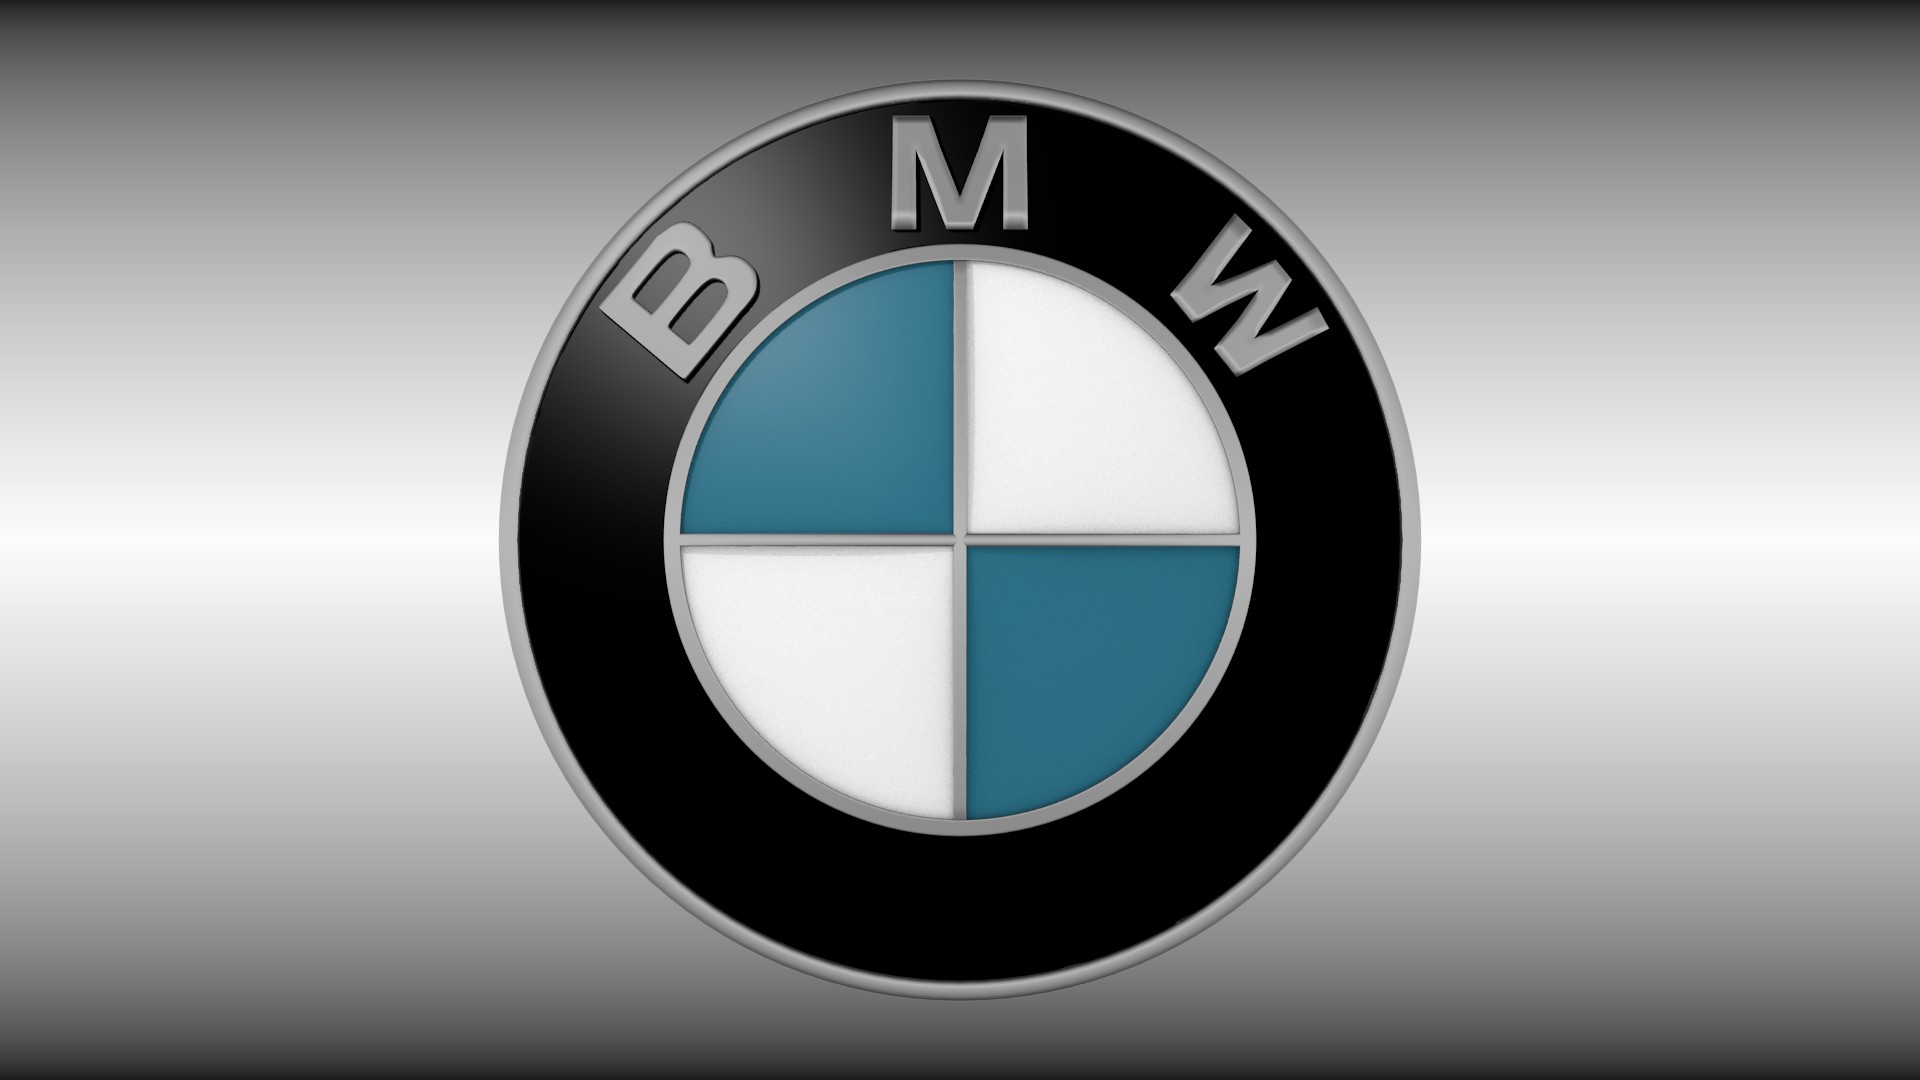 bmw logo fond d'écran hd,bmw,police de caractère,emblème,graphique,symbole